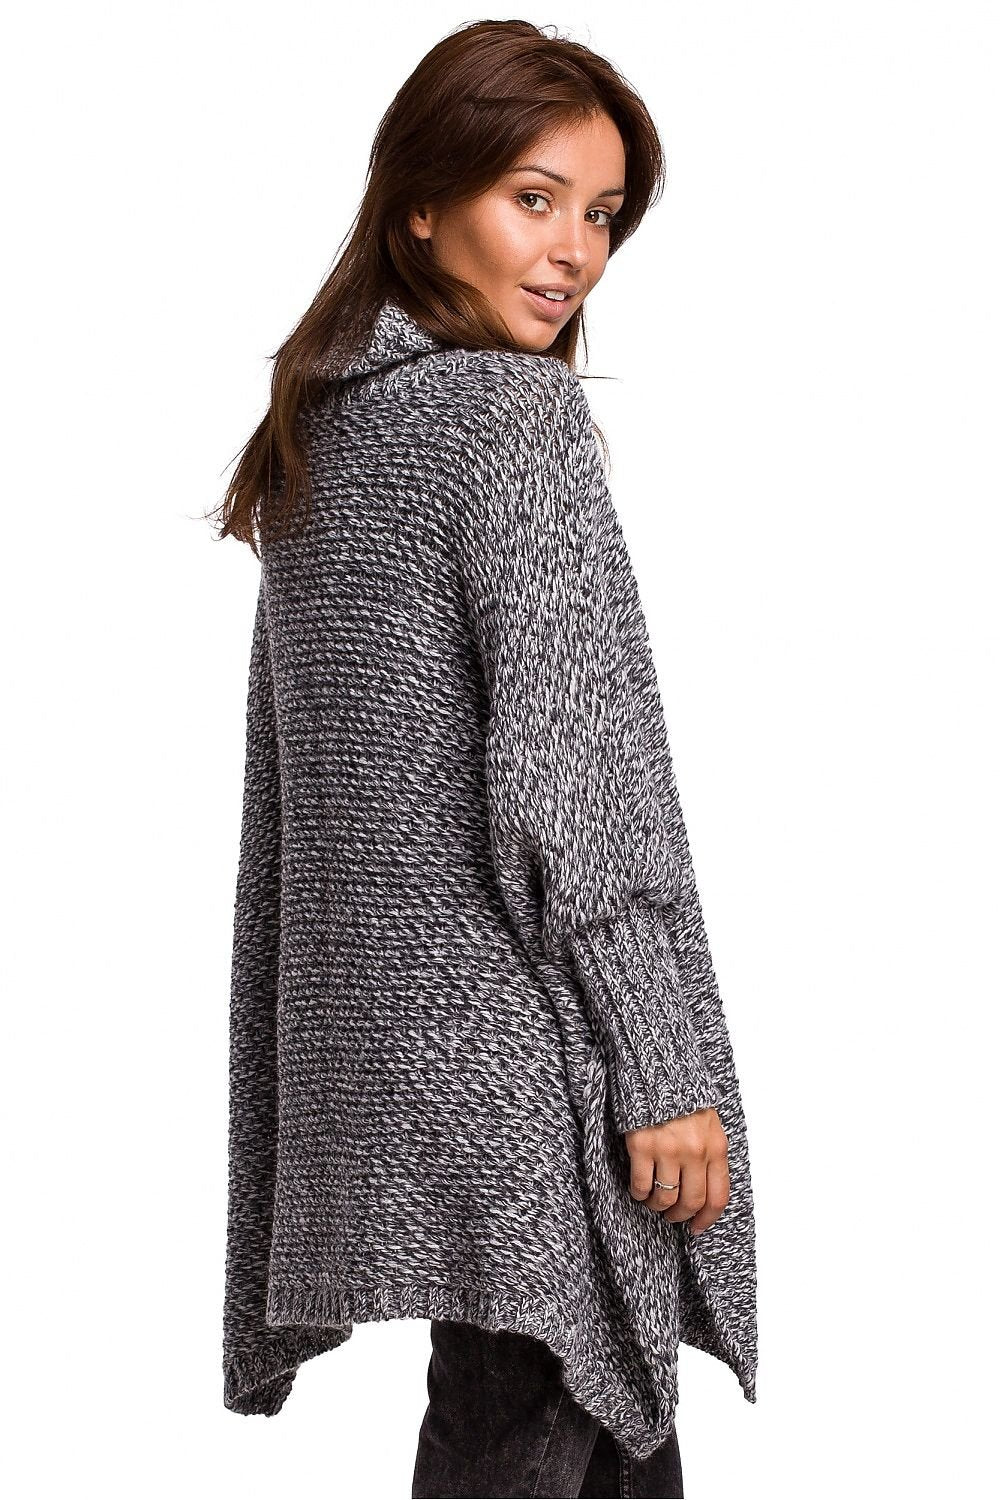 Poncho Warm Sweater